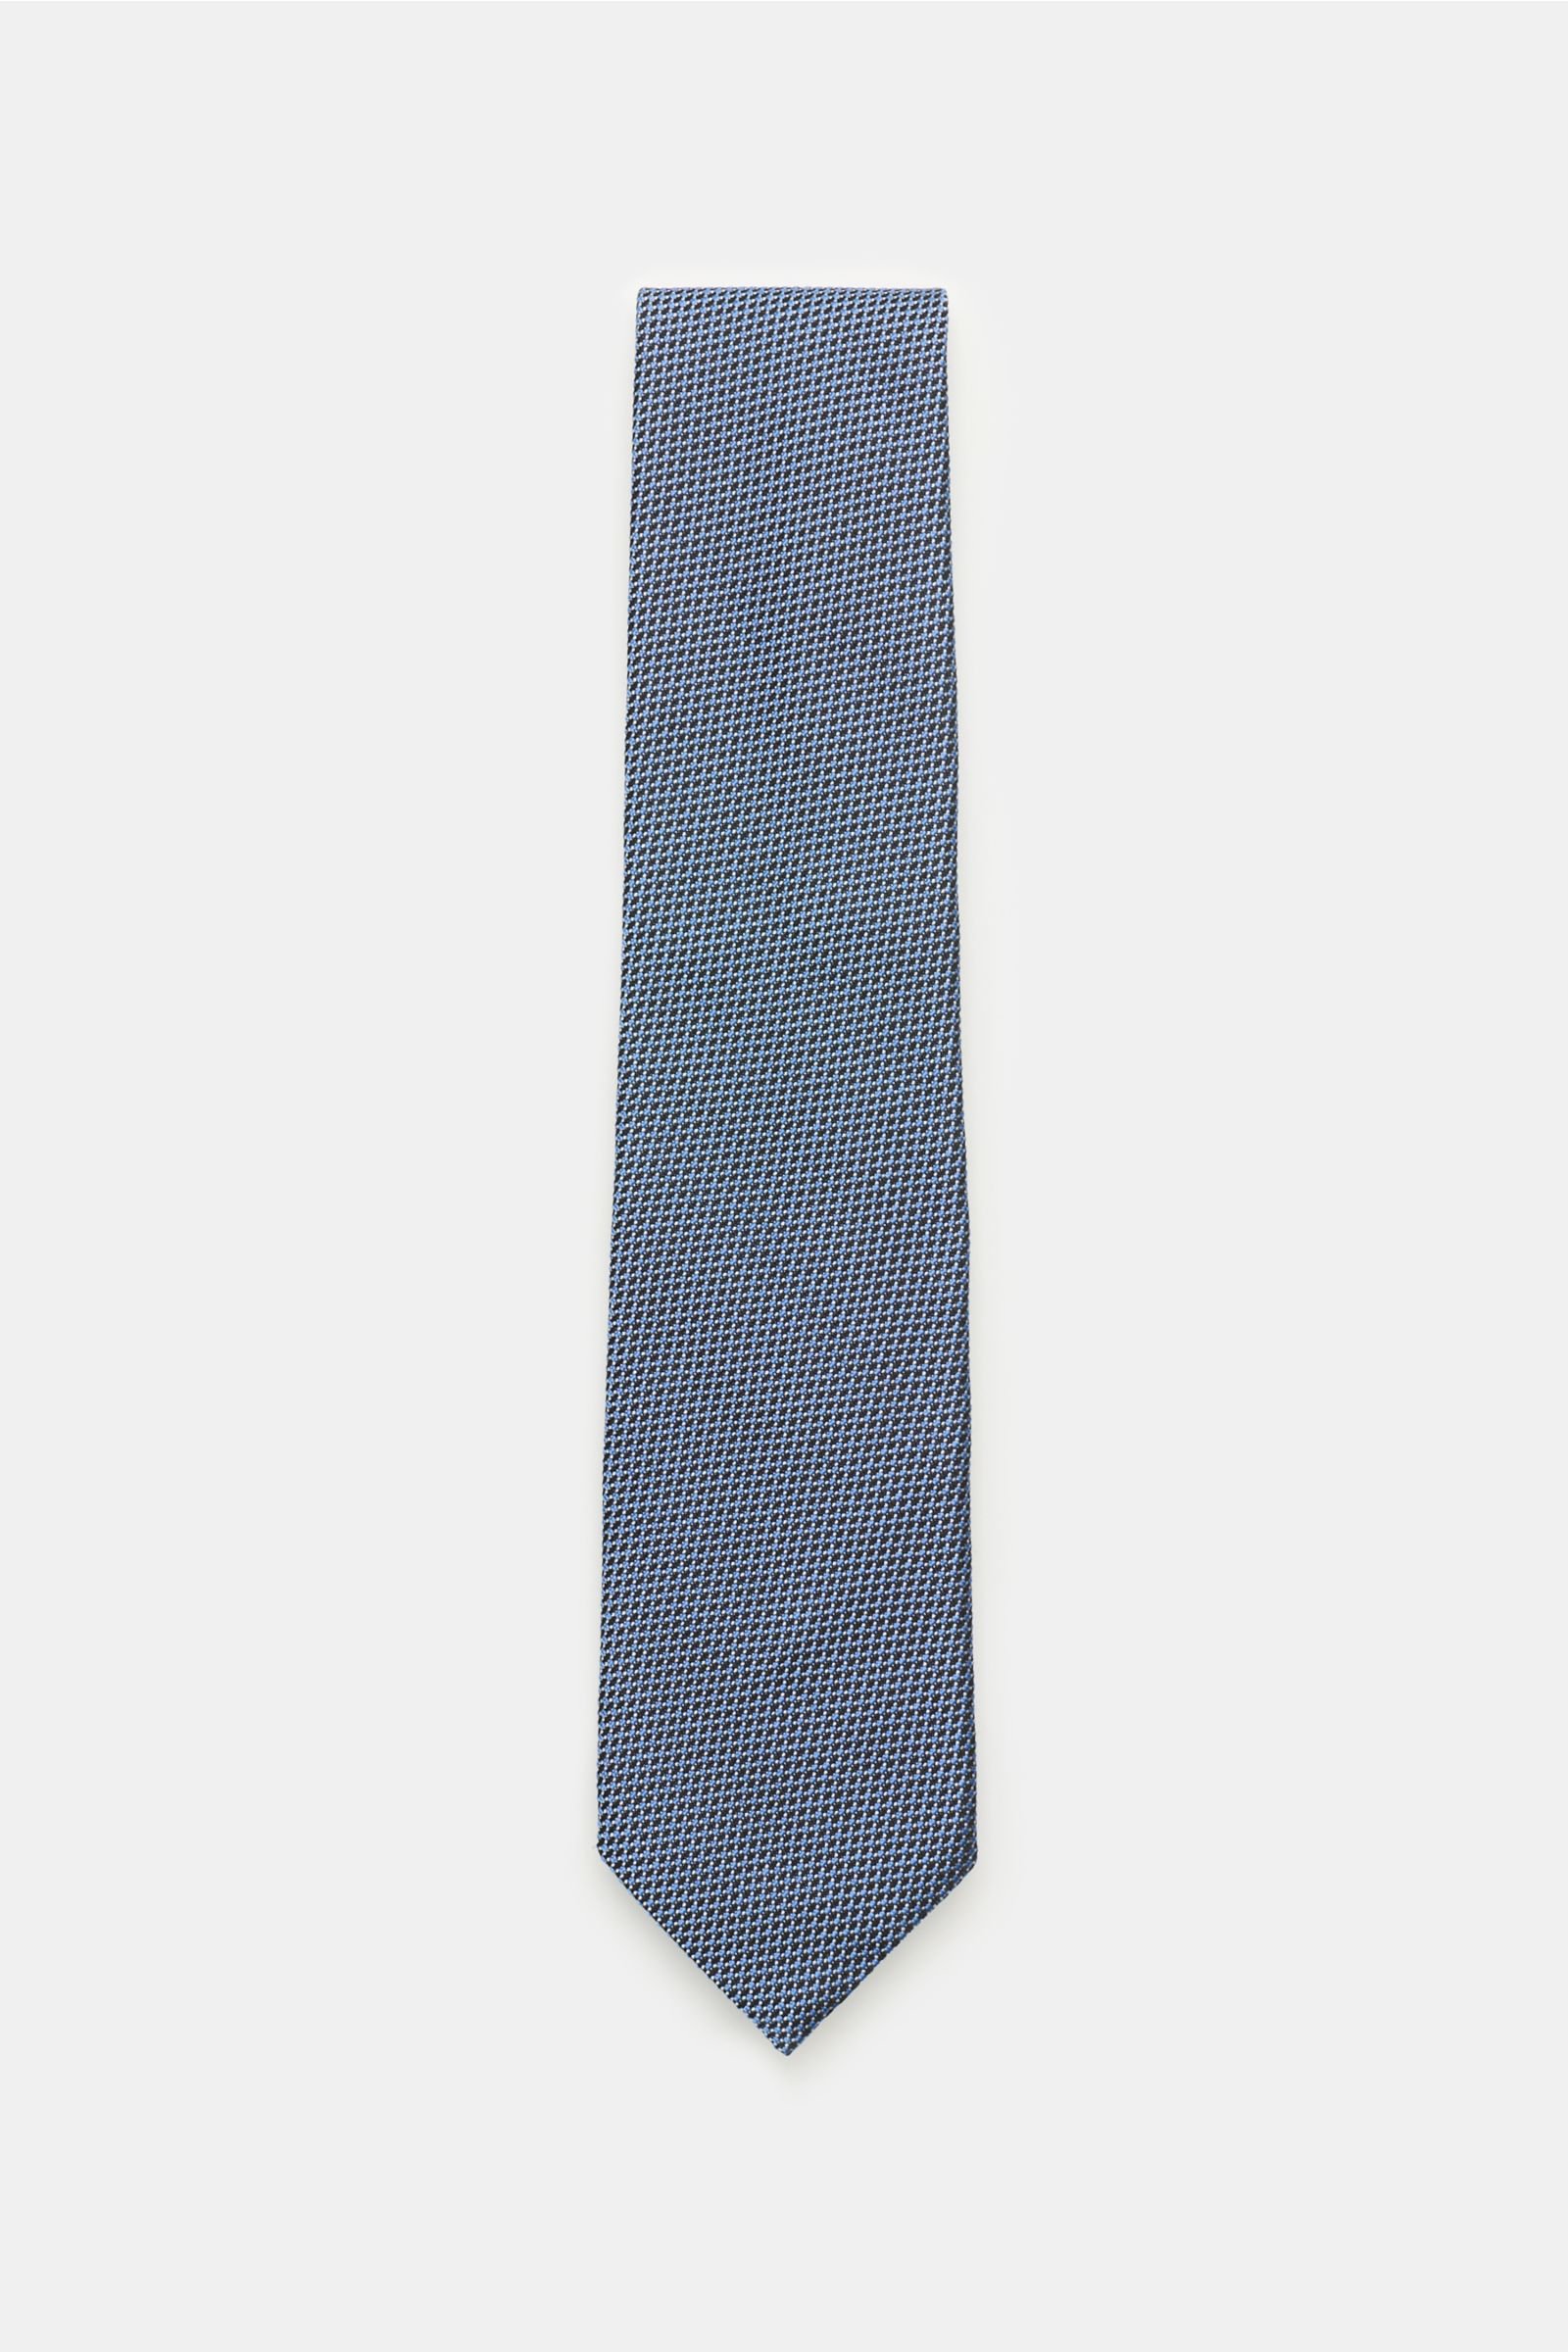 Tie smoky blue/navy patterned